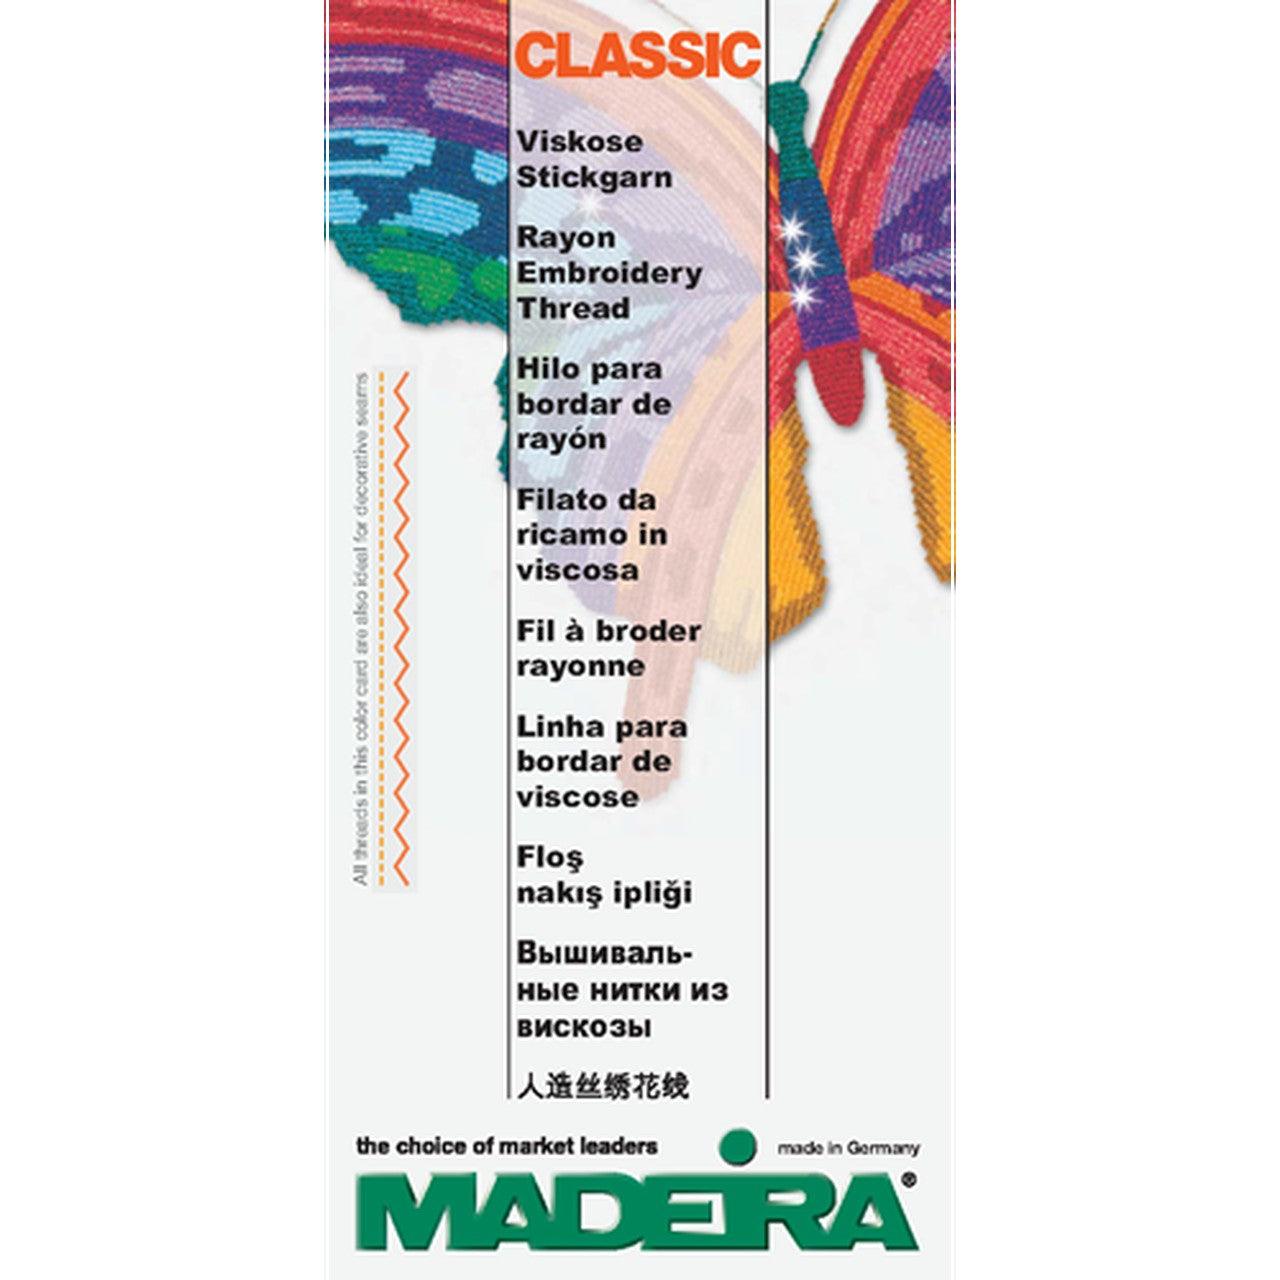 Madeira Rayon 100 Spool Collection